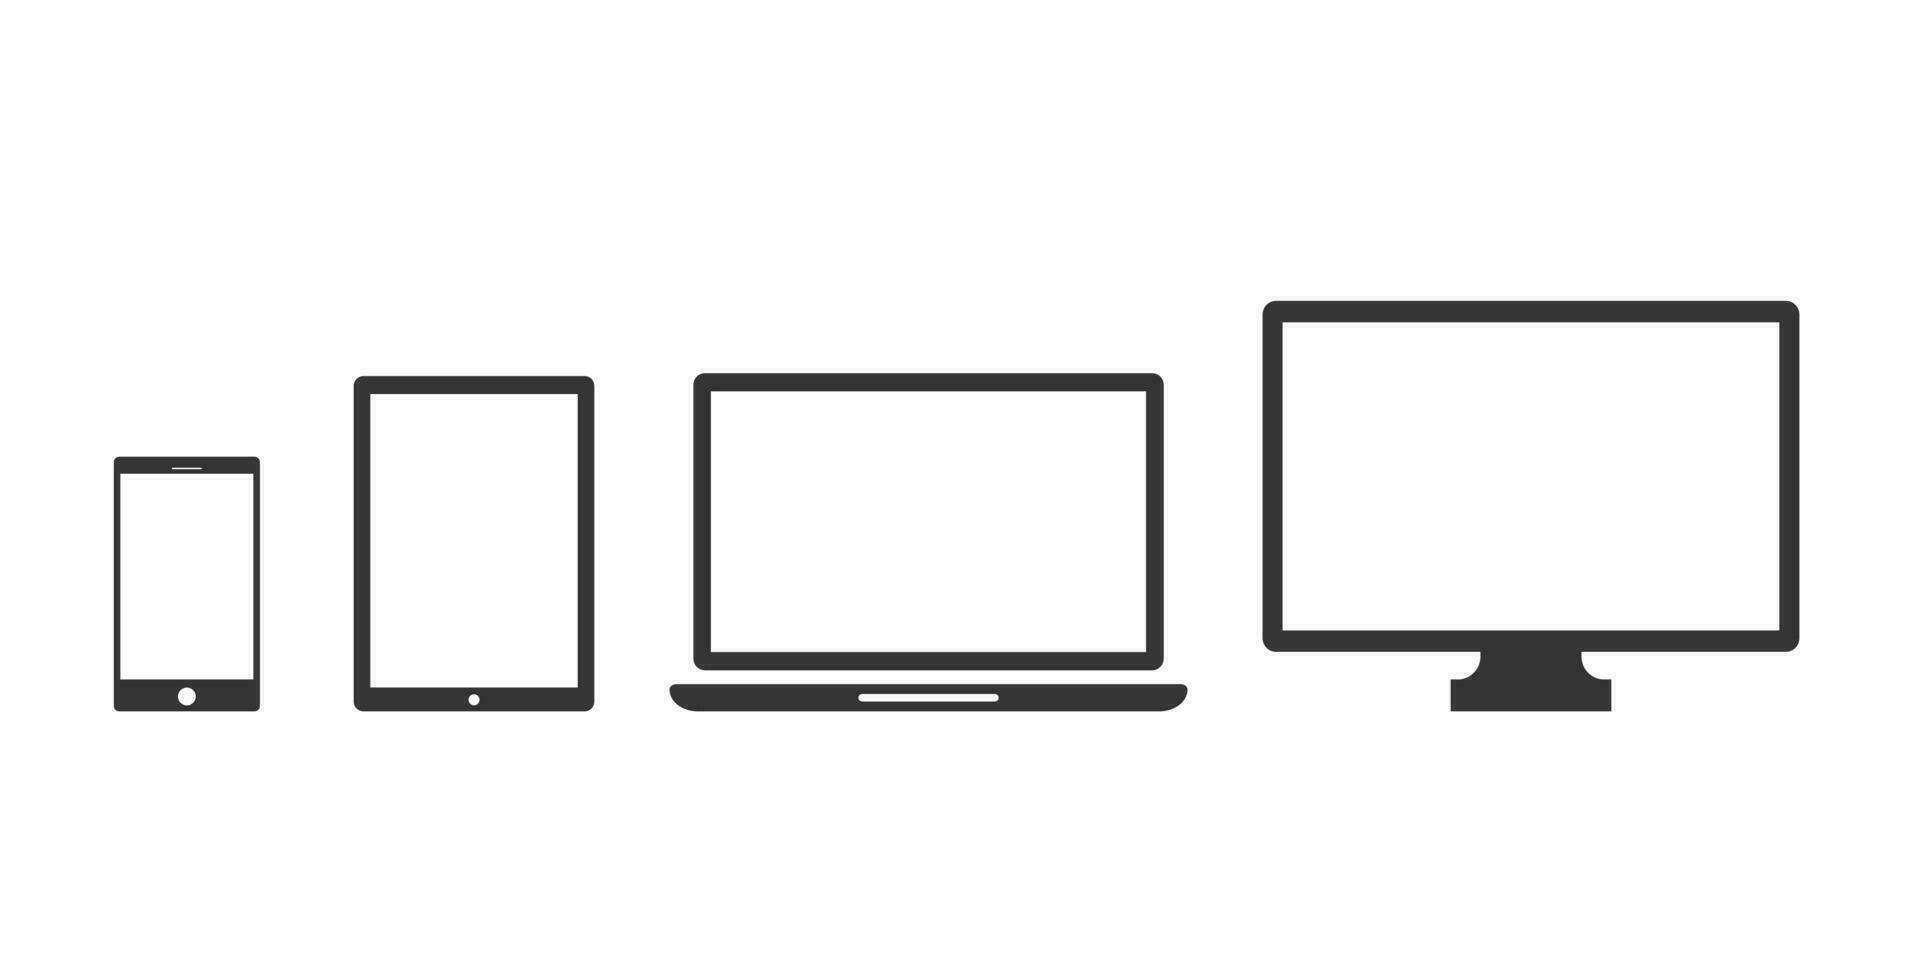 apparaat pictogrammen voor smartphone, tablet, laptop en bureaublad computer vector